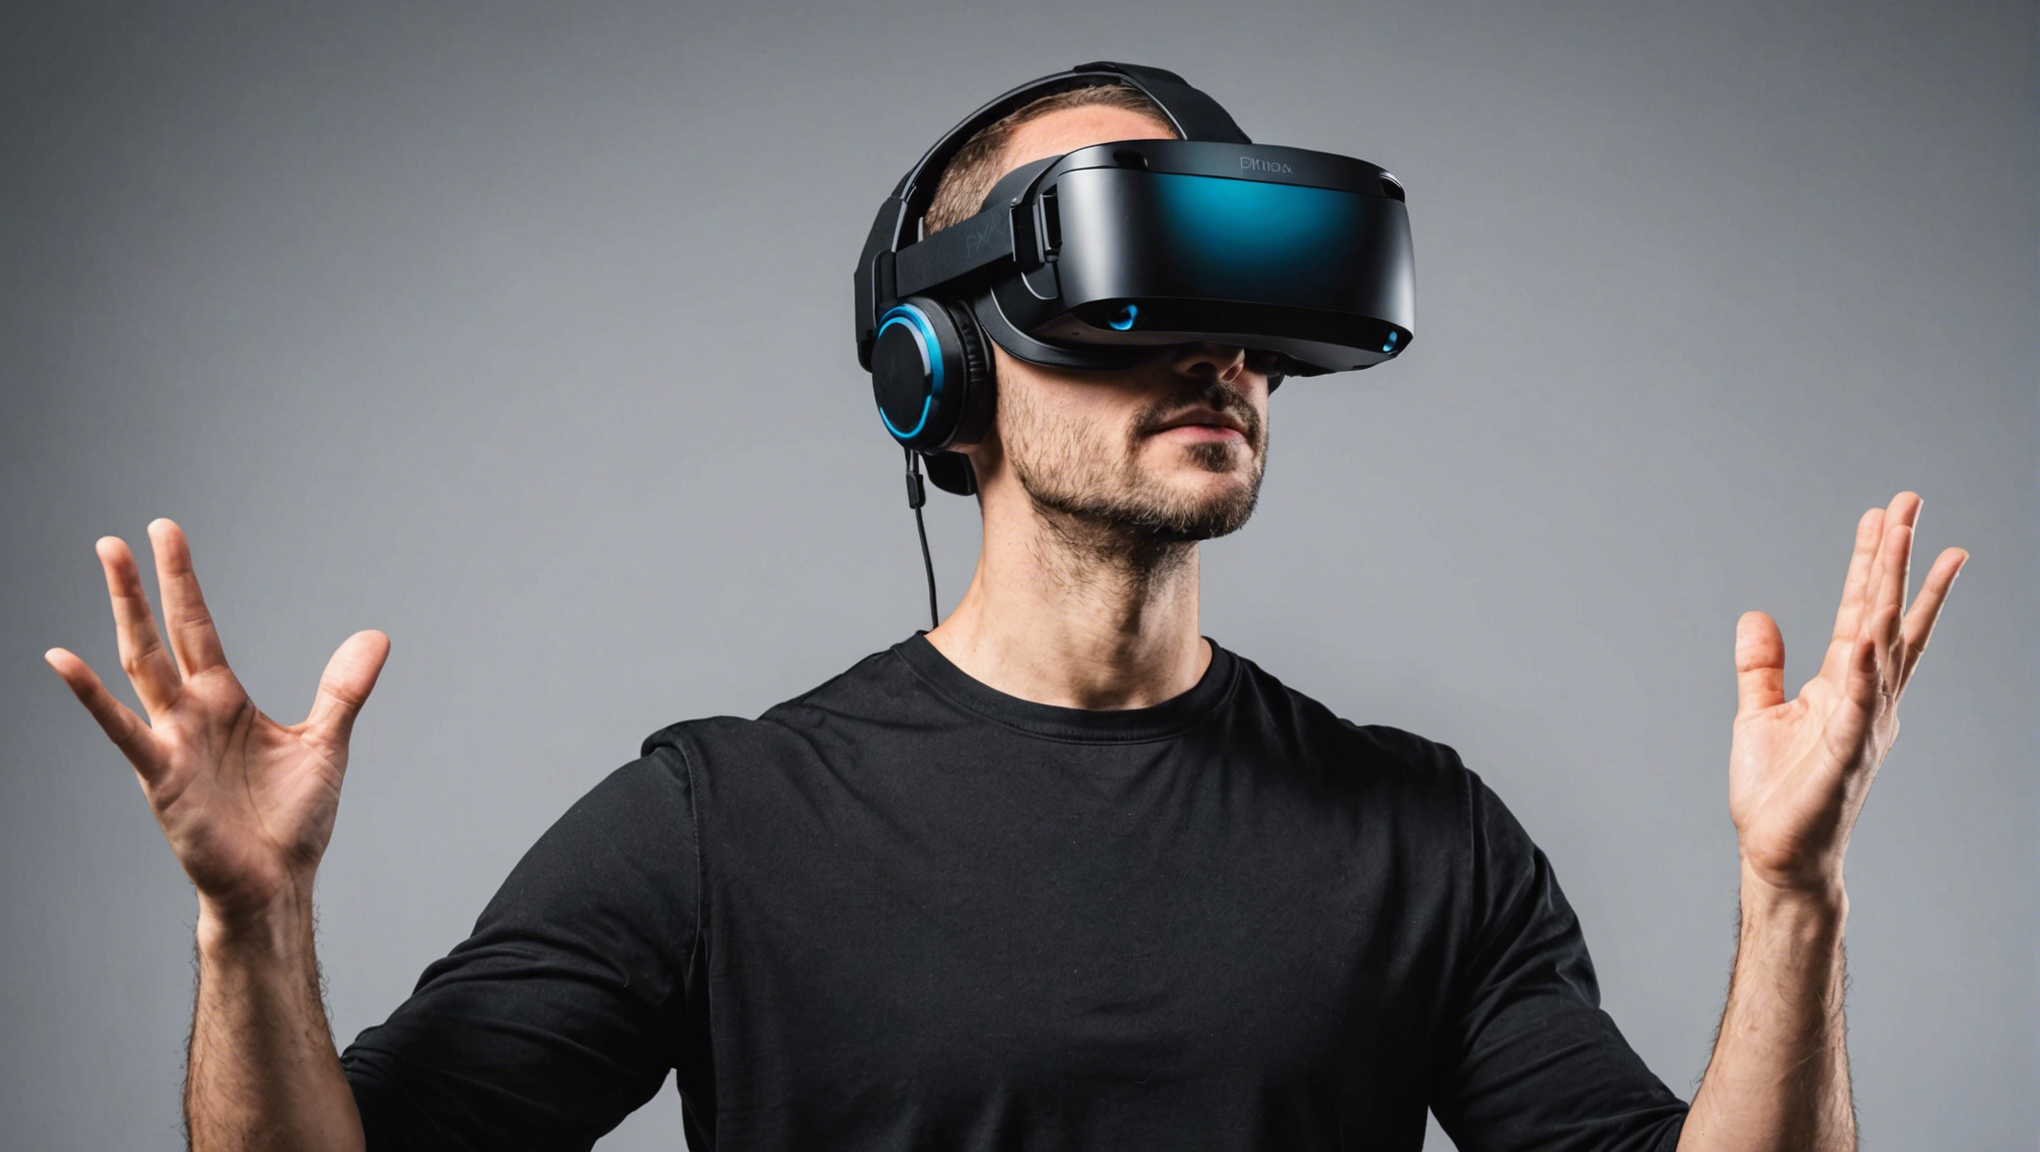 découvrez notre analyse du casque de réalité virtuelle pimax 8kx, la potentielle révolution dans le monde de la réalité virtuelle.